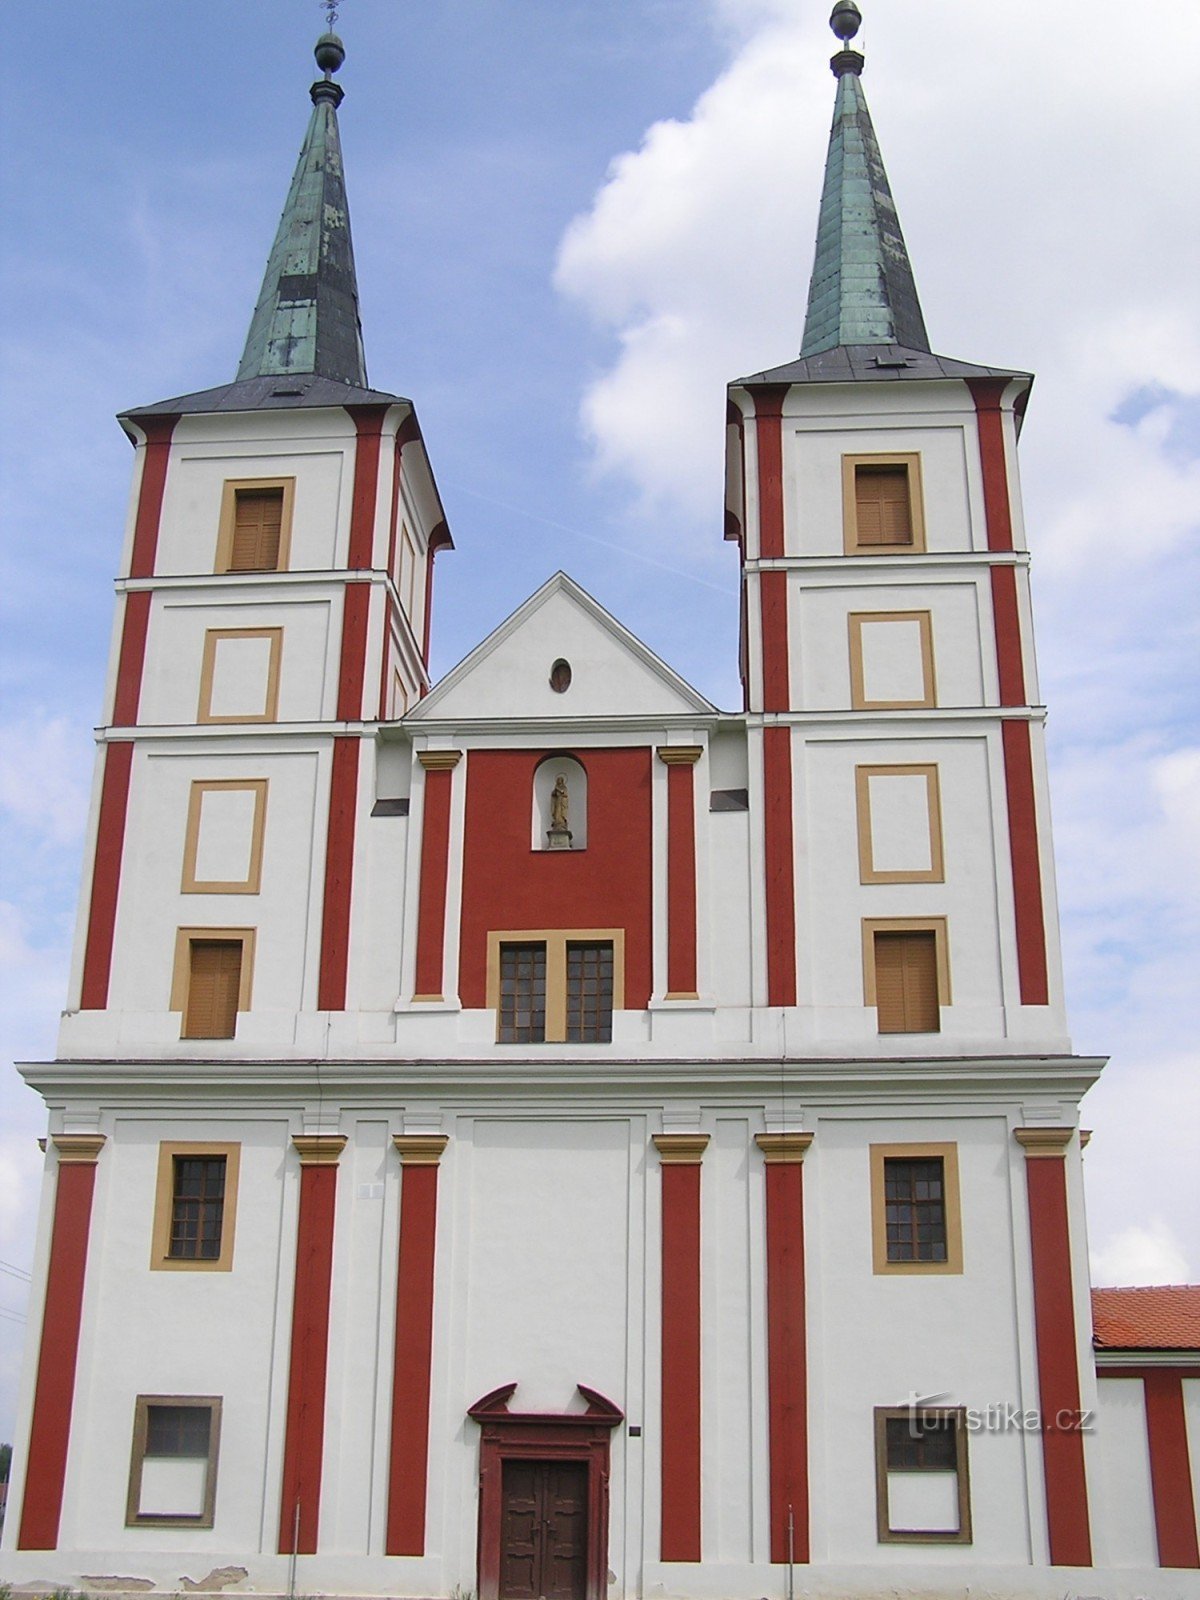 Sankta Margaretas kyrka